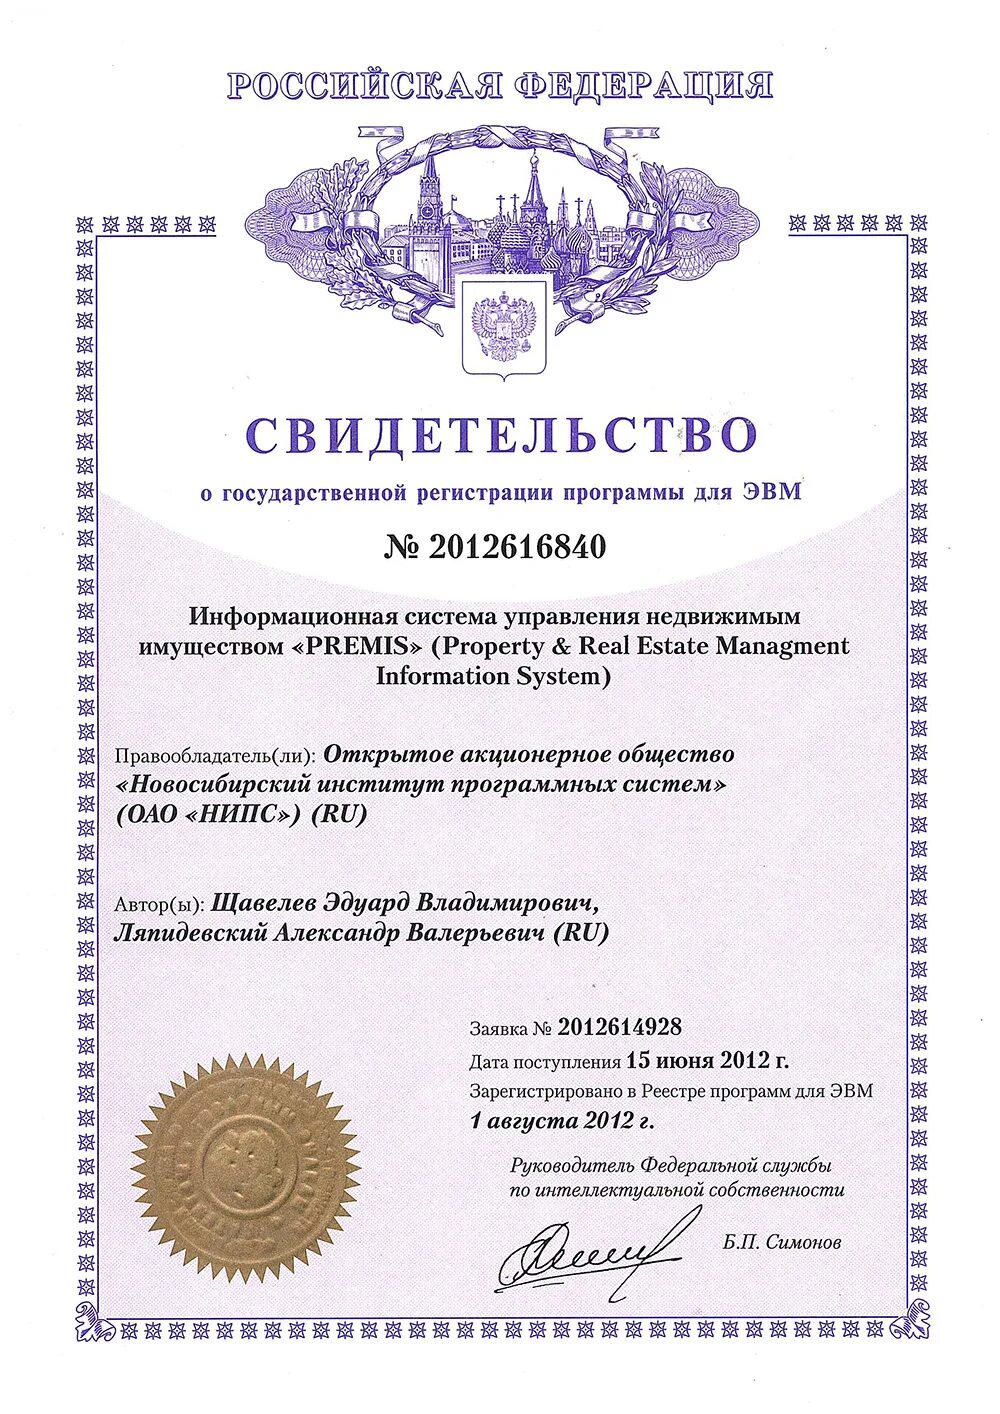 Разработка программ для эвм. Свидетельство о государственной регистрации программы для ЭВМ. Свидетельство о регистрации программы для ЭВМ № 2021614464. Государственная регистрация программы для ЭВМ. Реестр российских программ для ЭВМ.